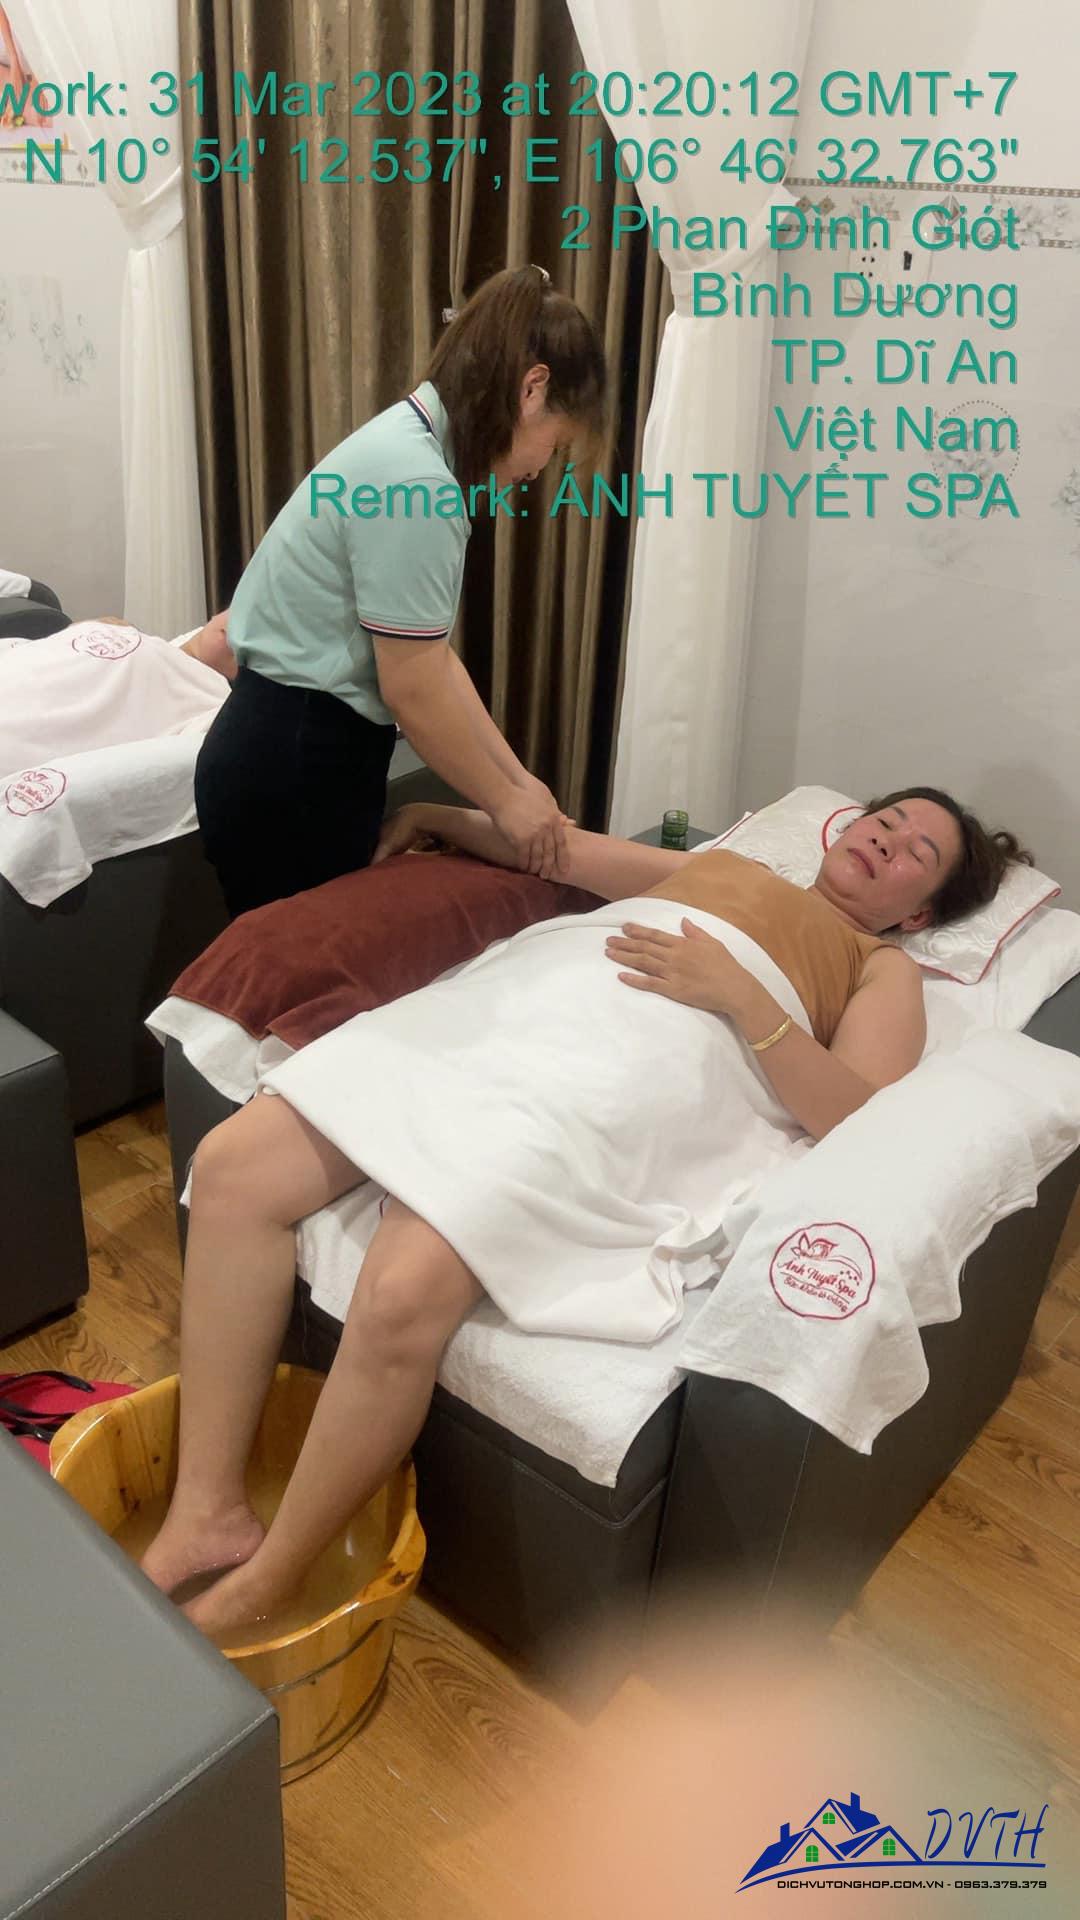 Nhân viên Ánh Tuyết spa thực hiện massage tay cho khách hàng